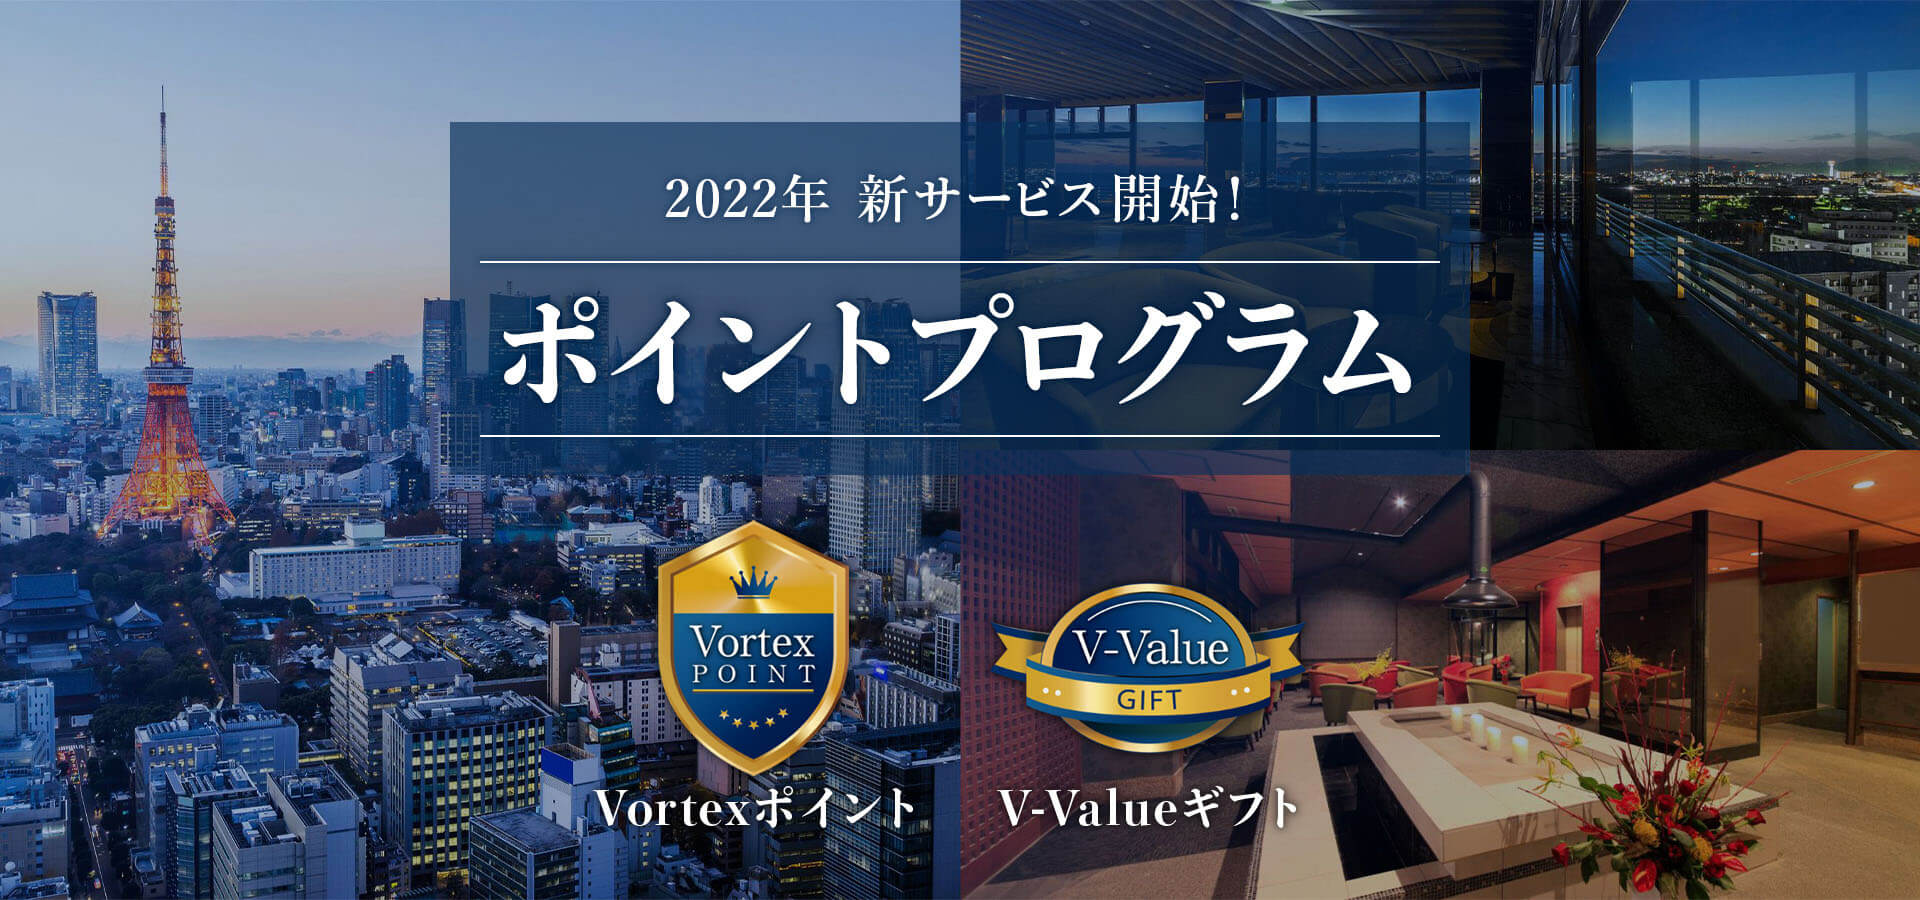 2022年 新サービス開始！ ポイントプログラム「Vortexポイント」・「V-Valueギフト」